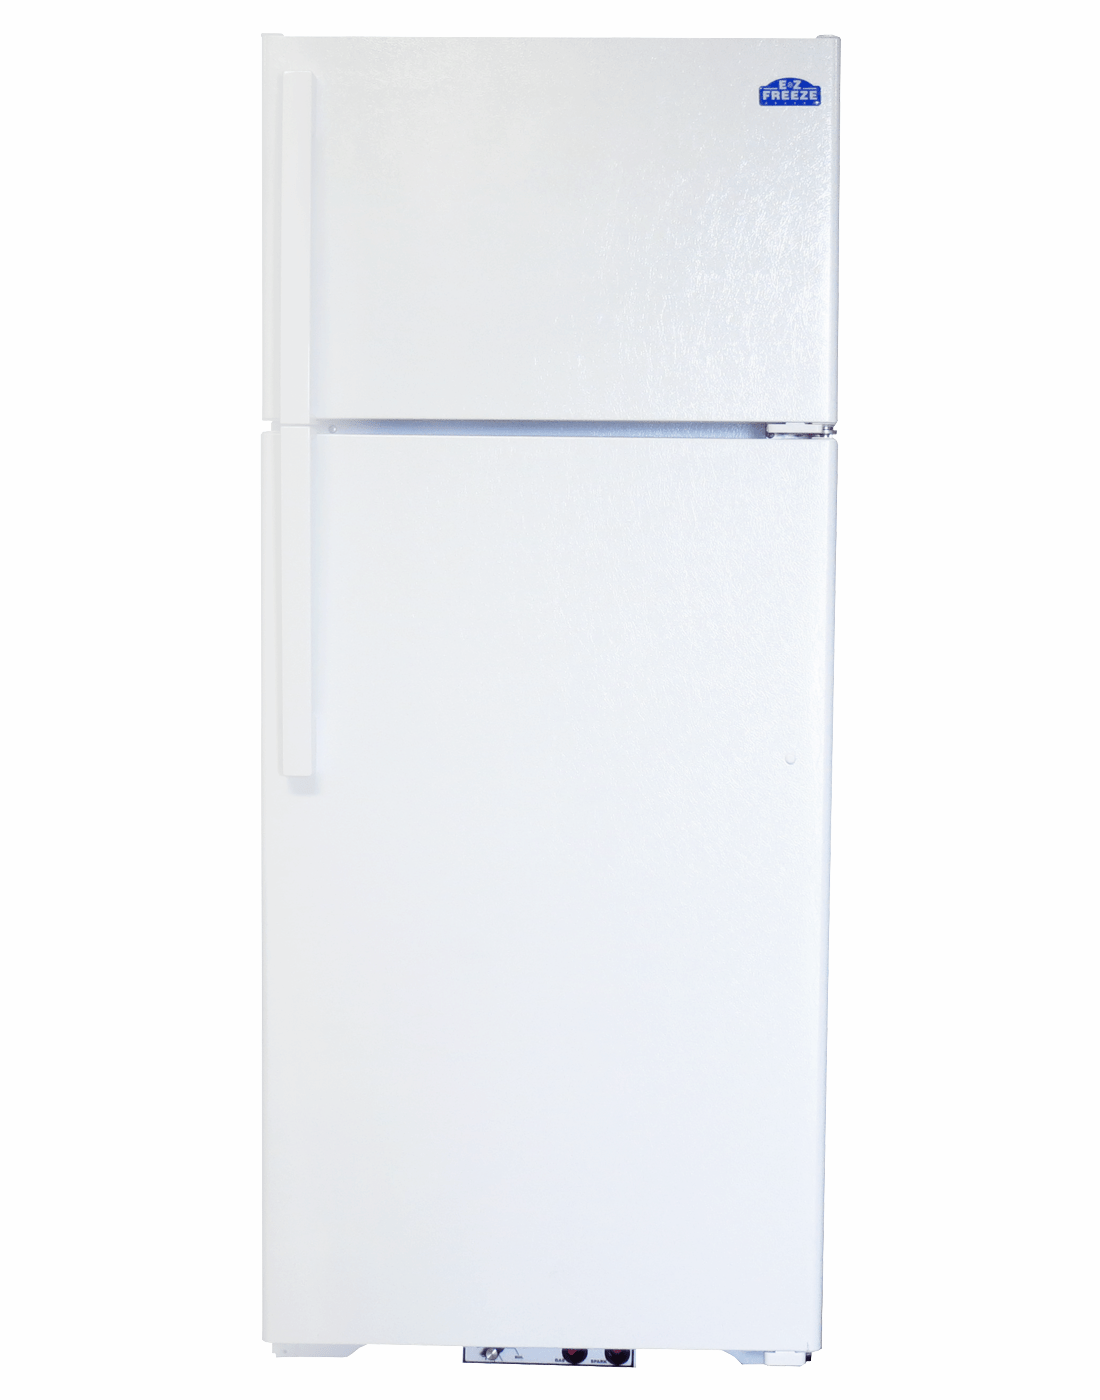 EZ Freeze Propane Refrigerator EZ Freeze EZ-19W 19 cu. ft. Propane Refrigerator-Freezer in White